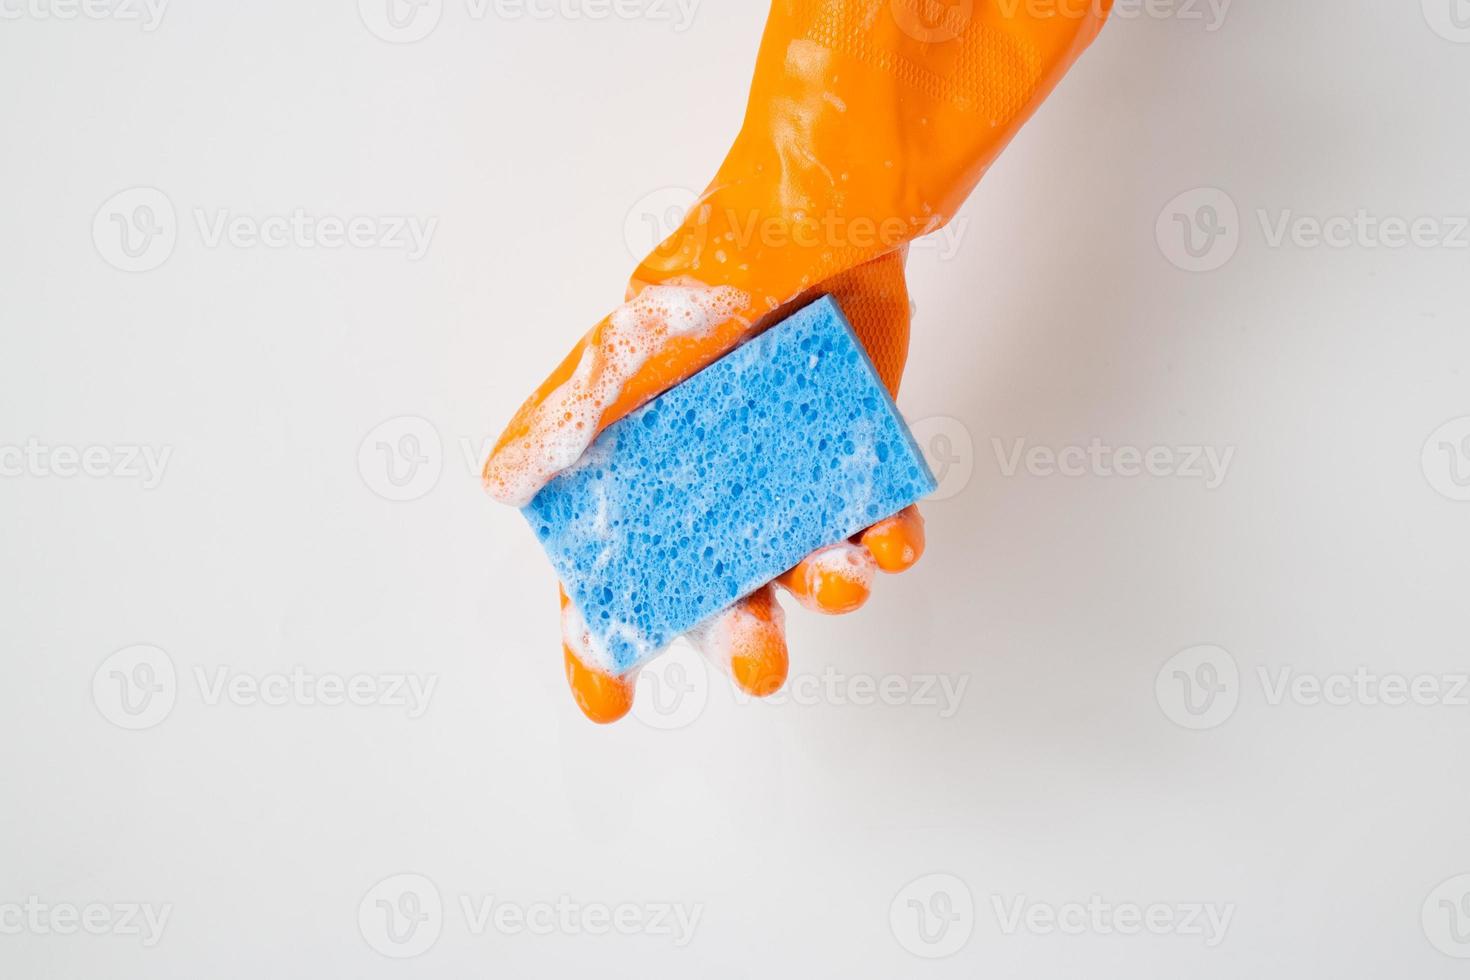 concept de nettoyage, main dans des gants en caoutchouc orange et tenant une éponge bleu clair avec de la mousse pour le nettoyage photo